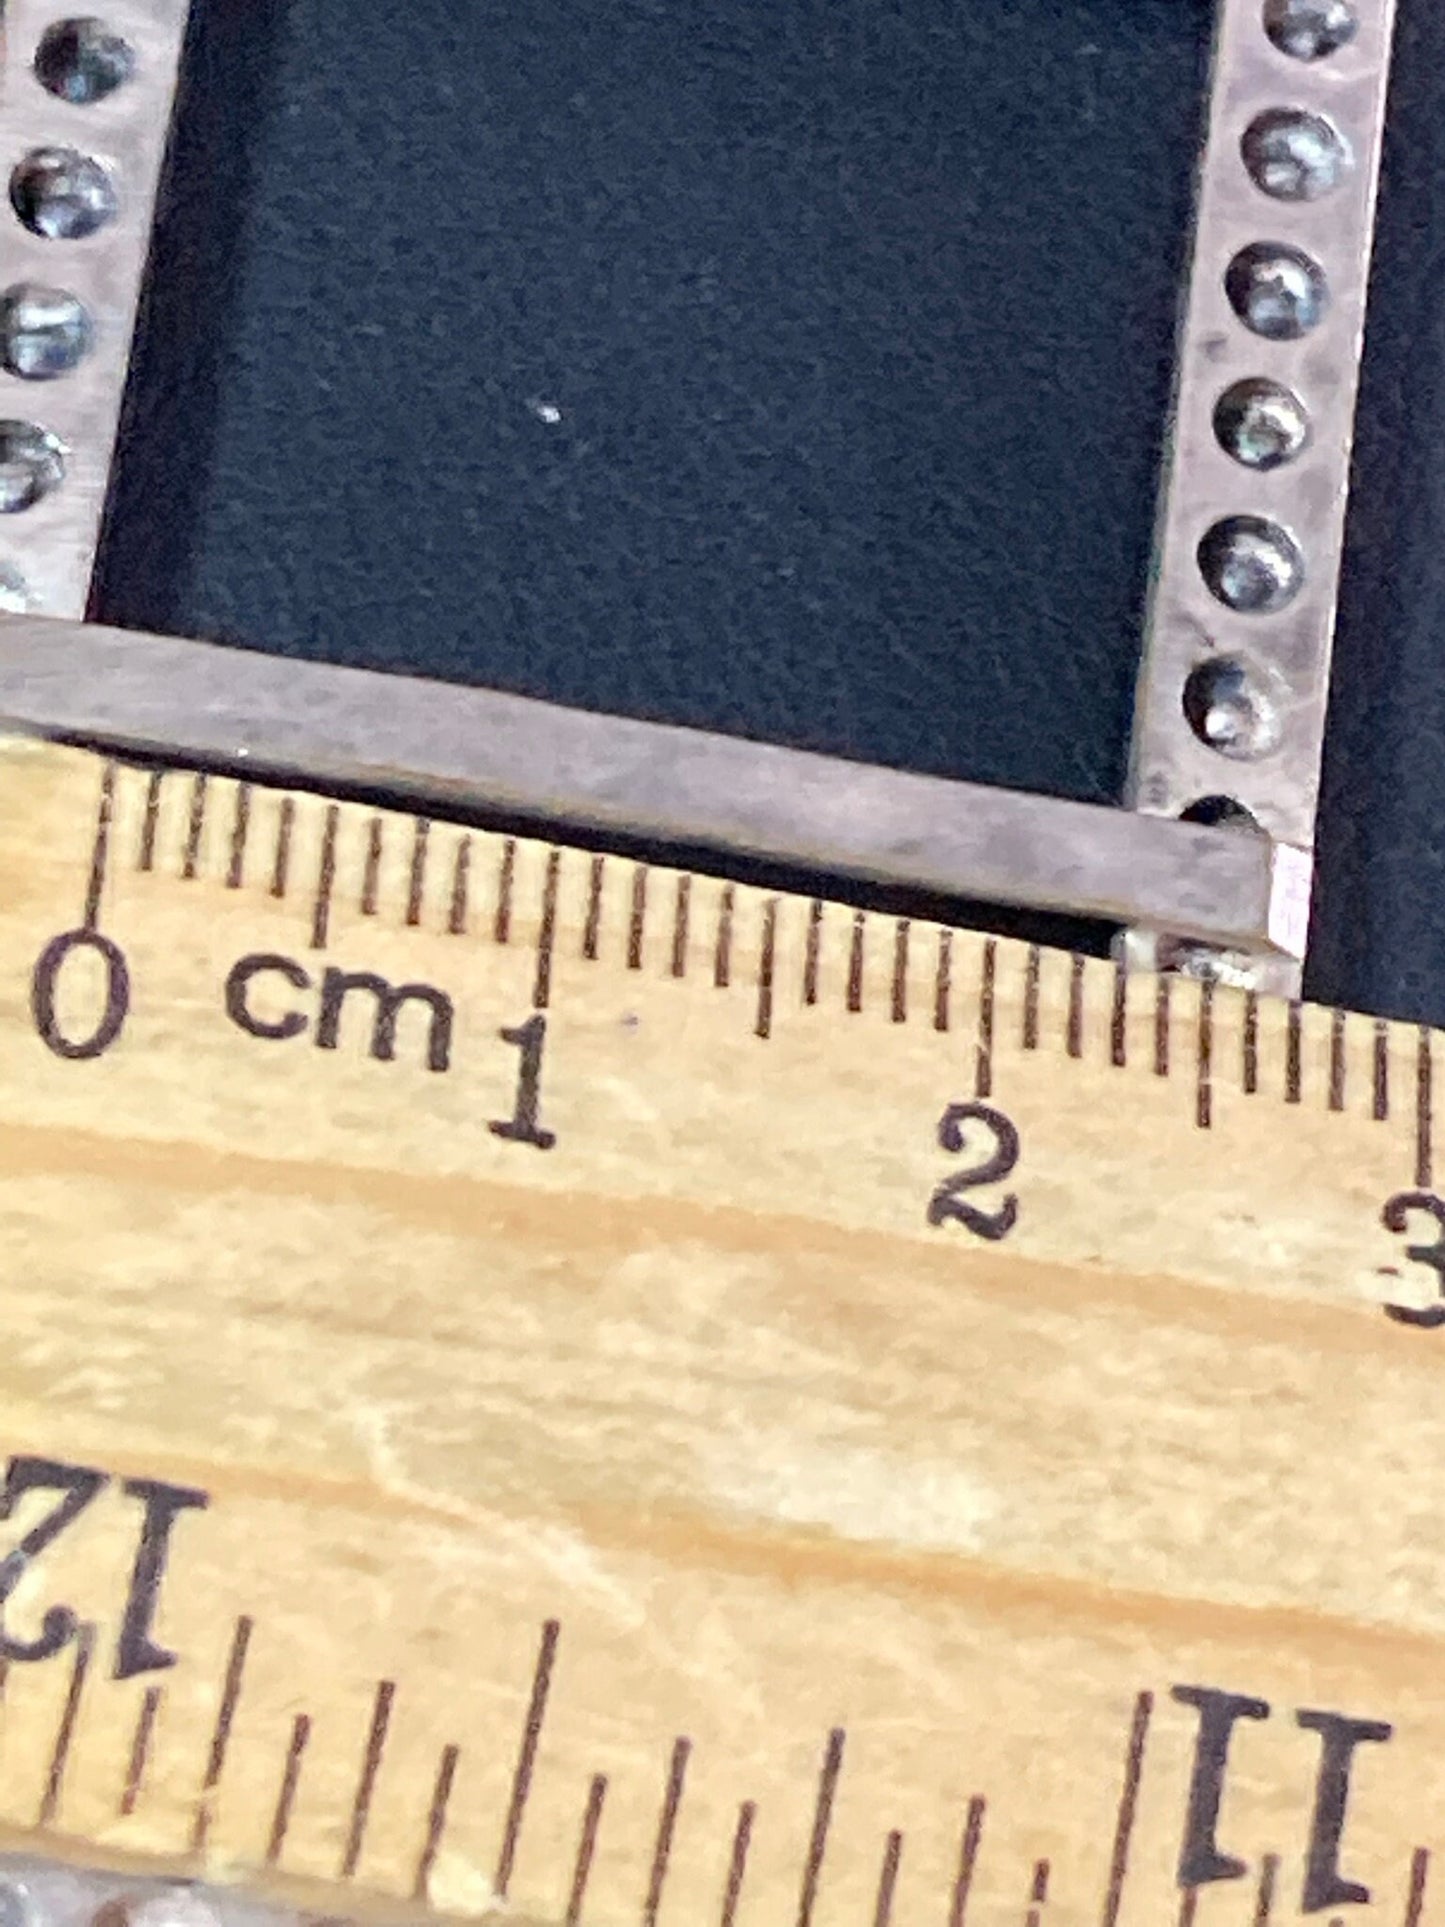 Antique 6cm rectangle Claw Set Clear Glass Diamante Belt Buckle